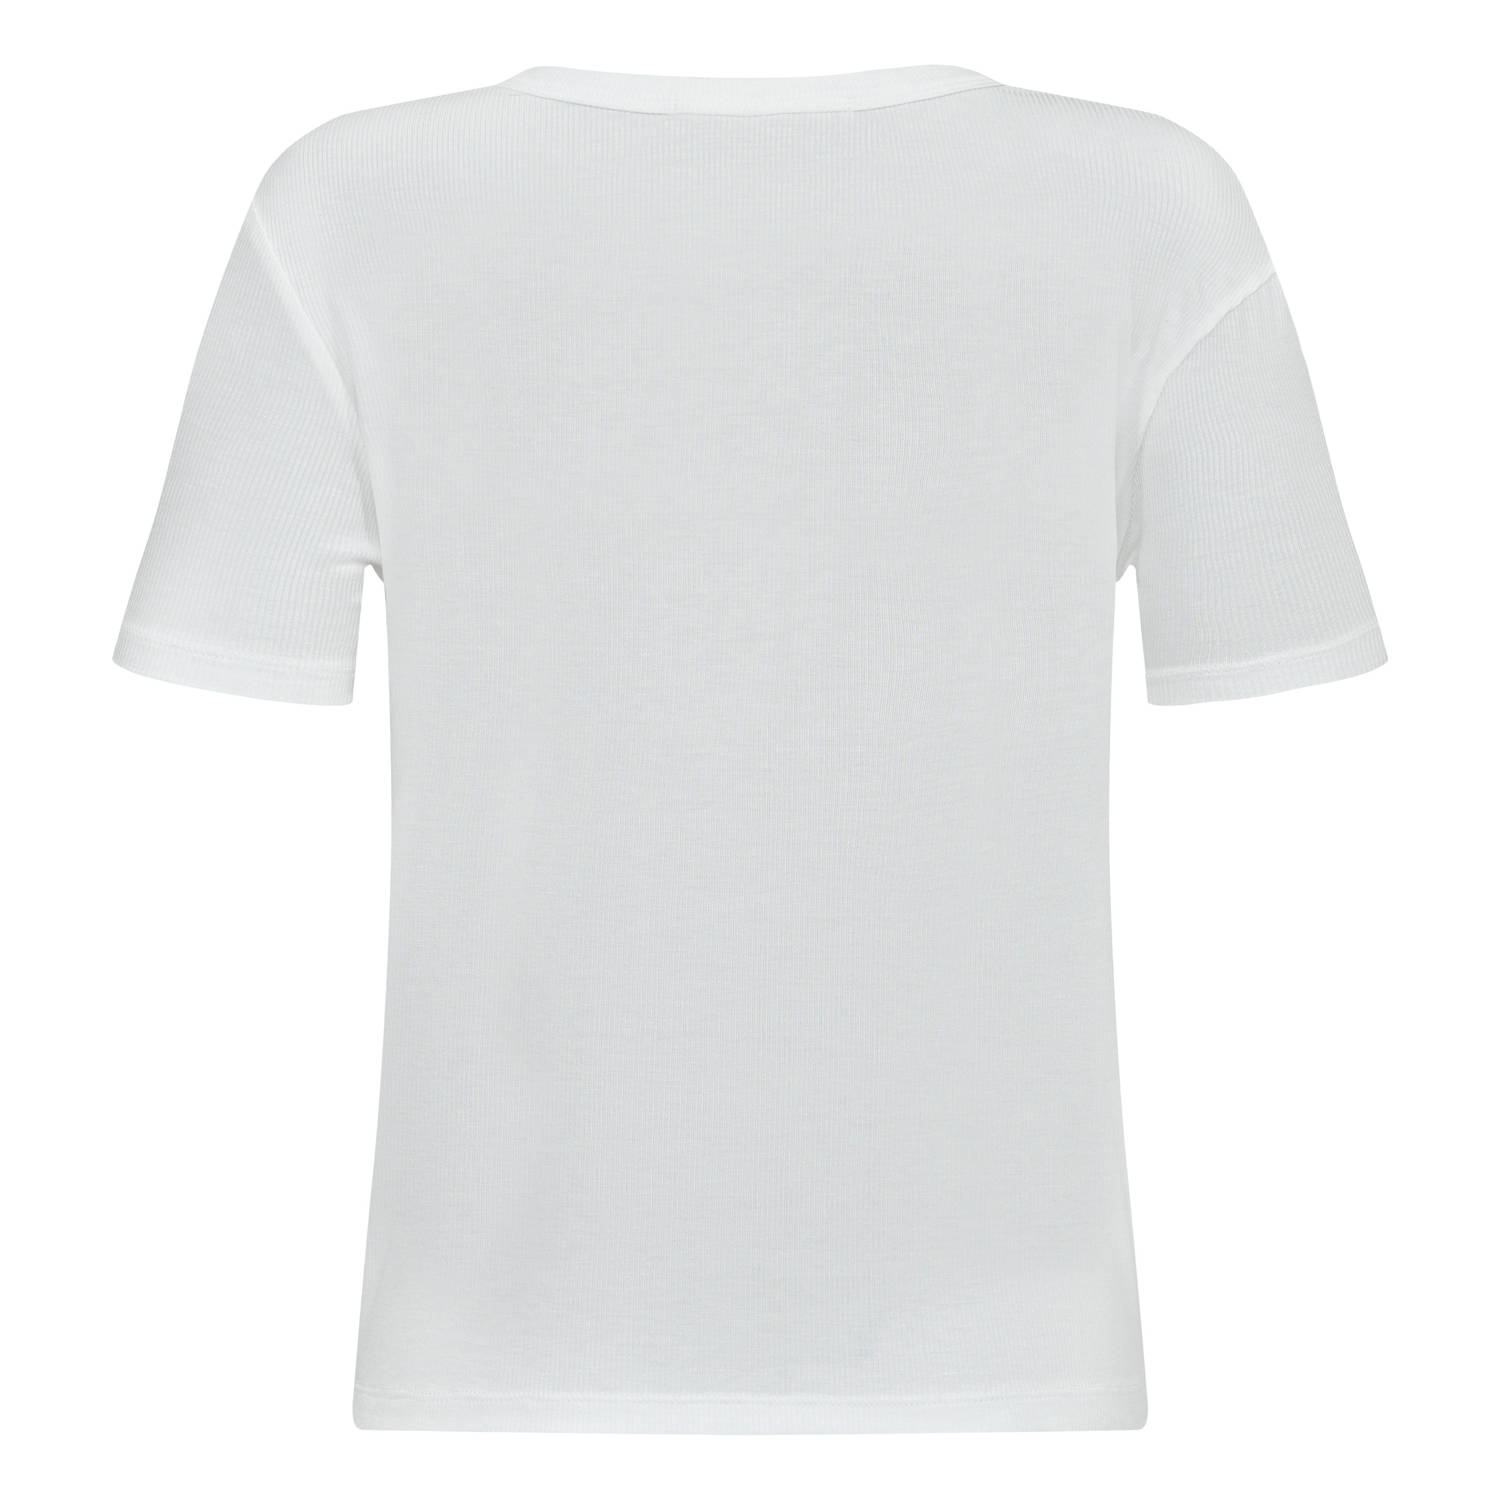 Sofie Schnoor T-shirt wit